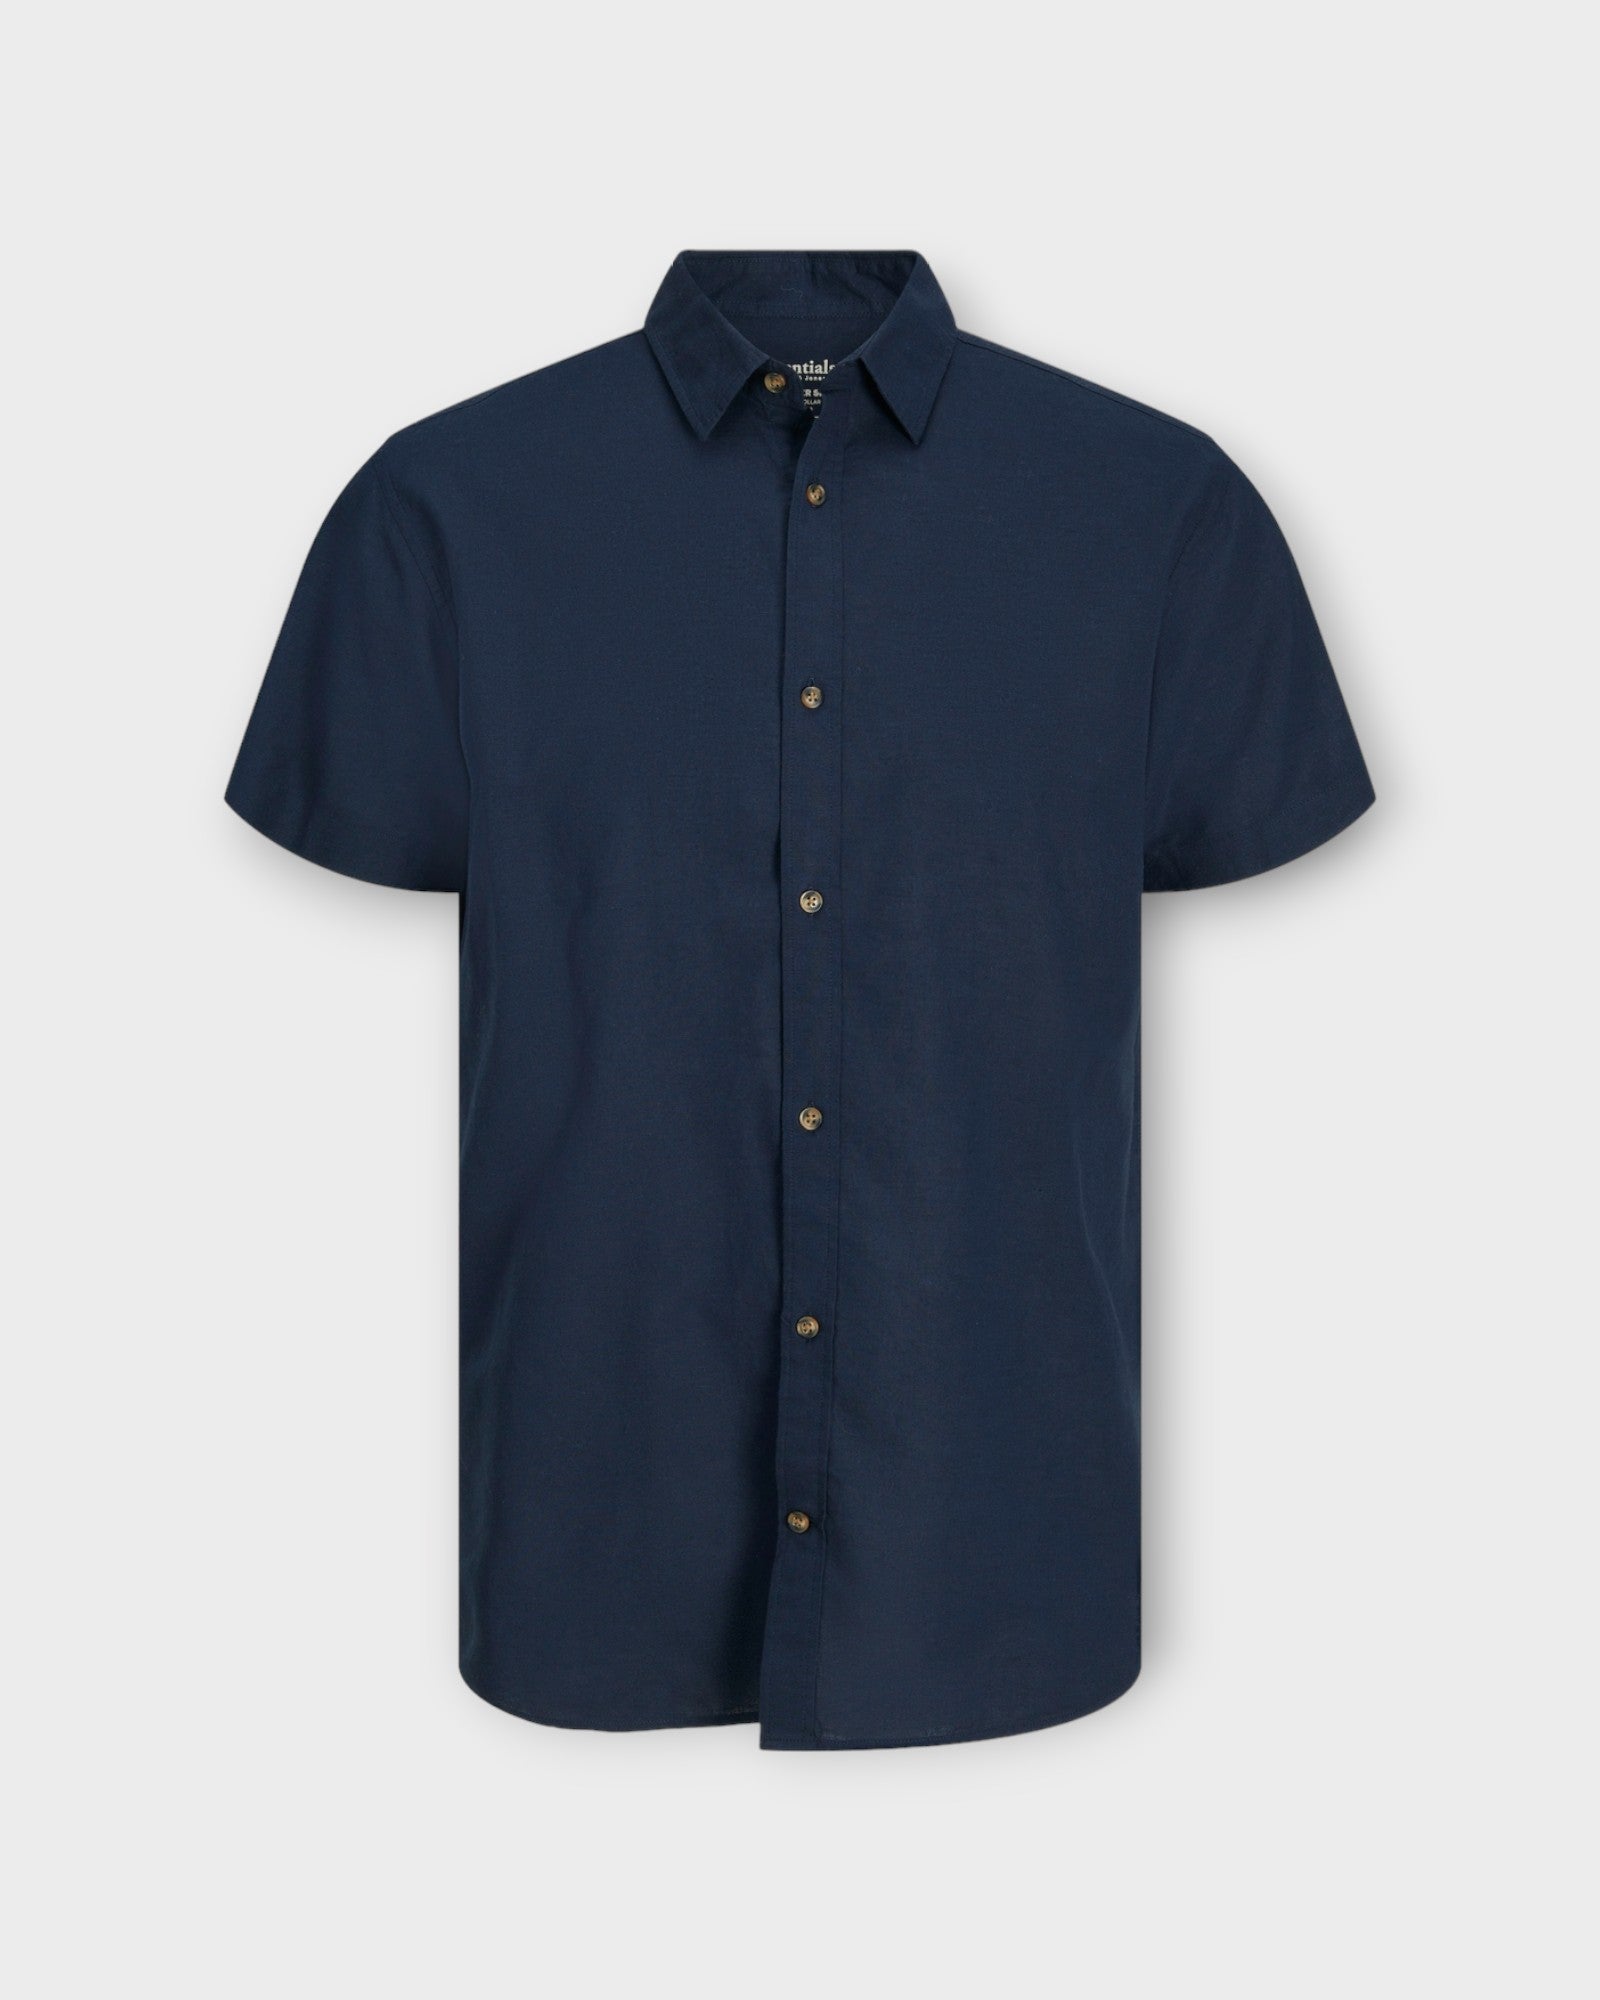 Summer Linen Shirt Navy Blazer fra Jack and Jones. Kortærmet mørkeblå hørskjorte til mænd. Her set forfra.